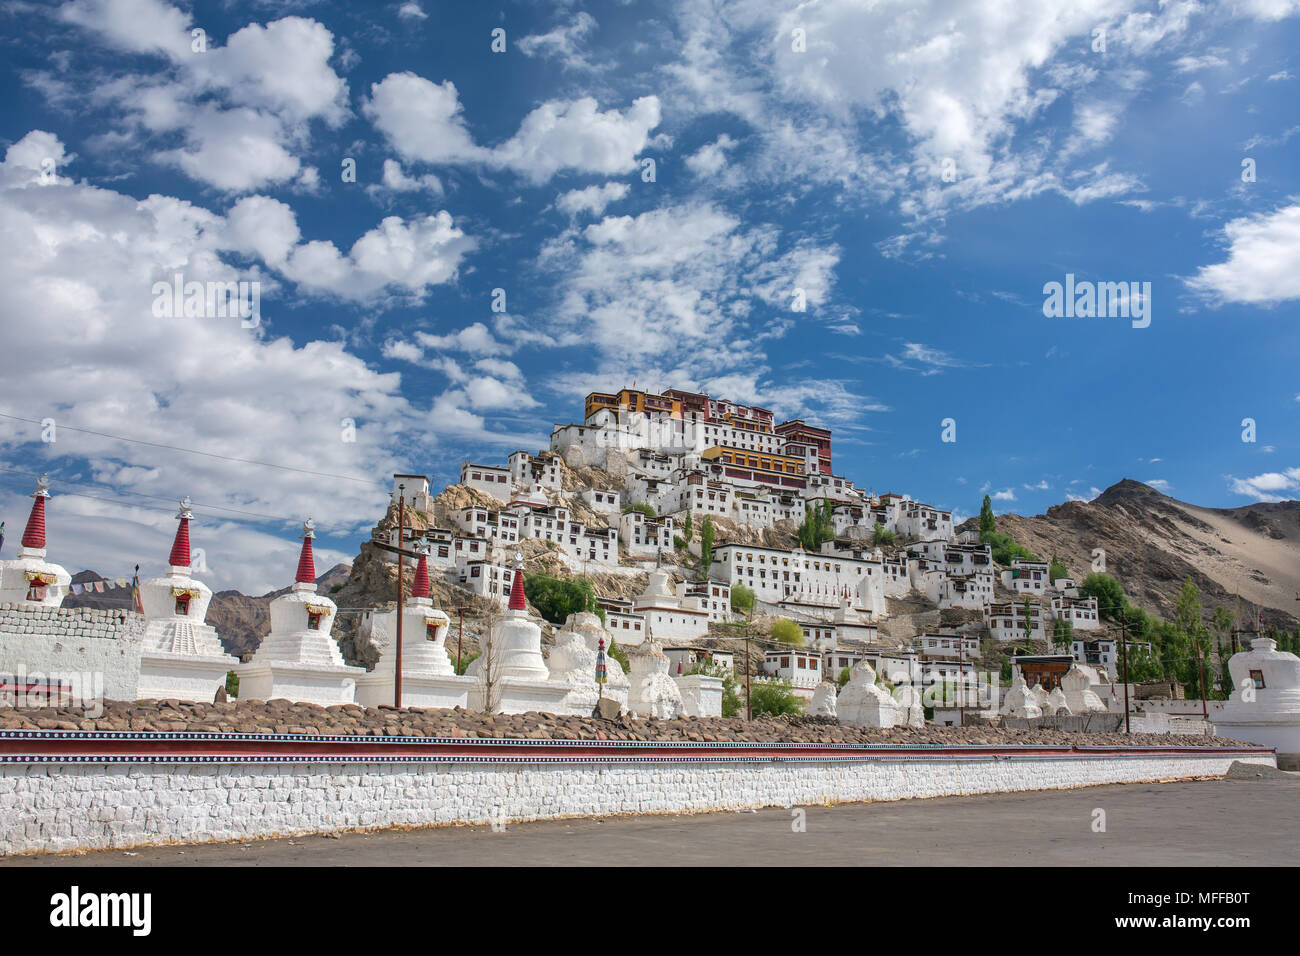 Le monastère de Thiksey au Ladakh, Inde. Banque D'Images